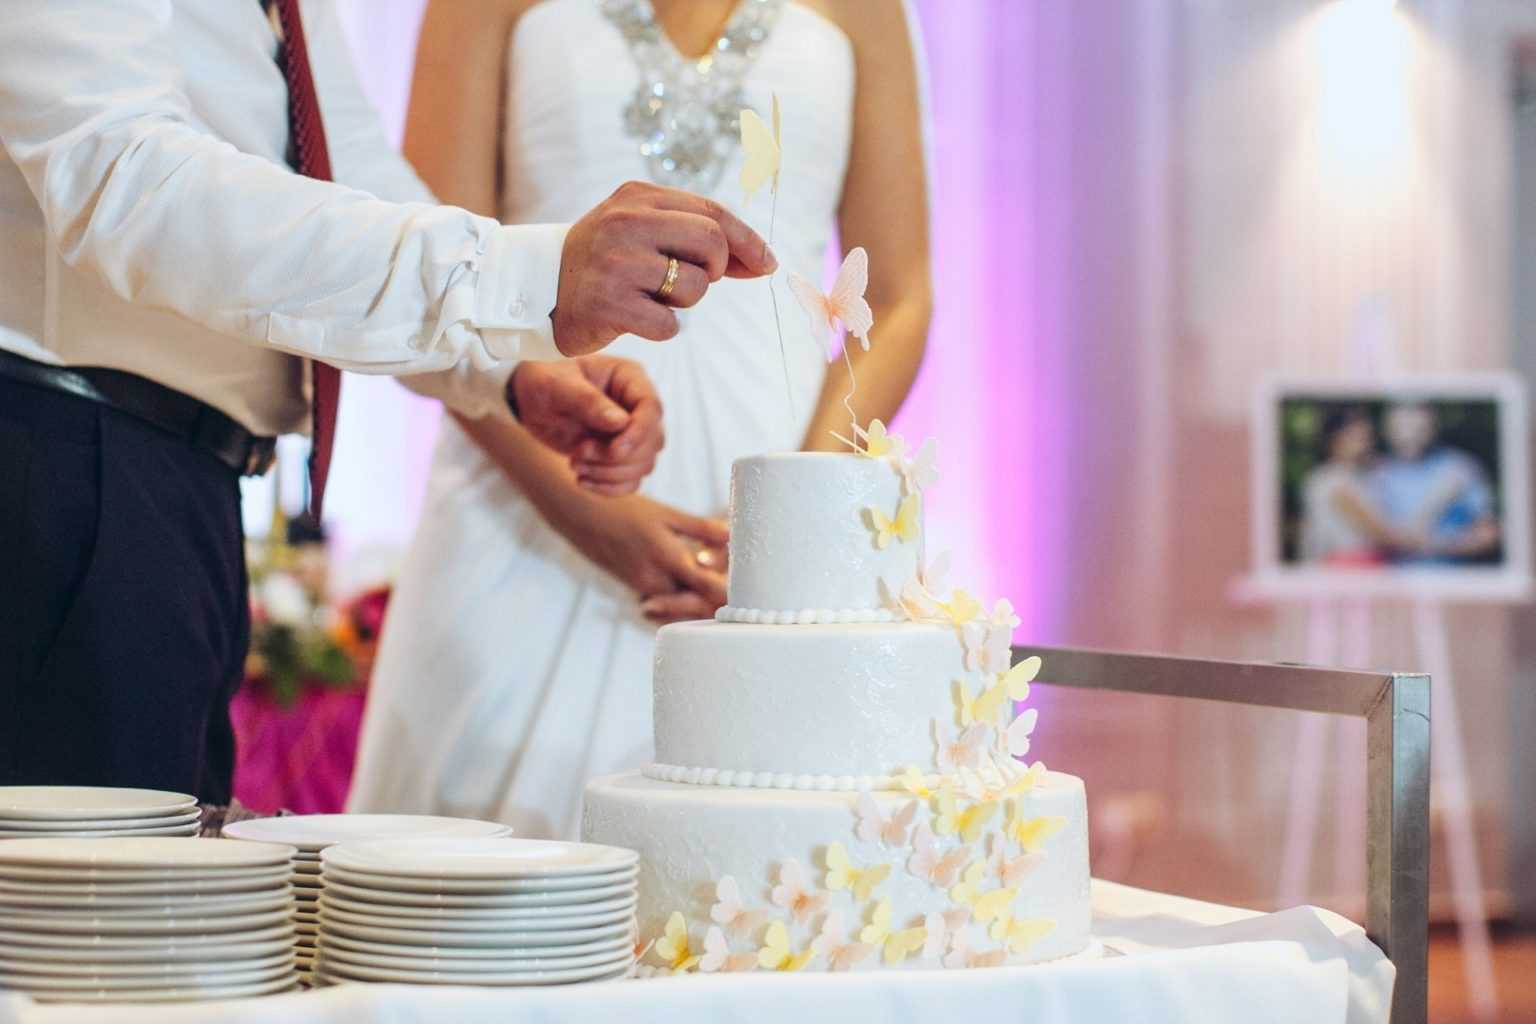 Камерная свадьба – как сделать ее незабываемой